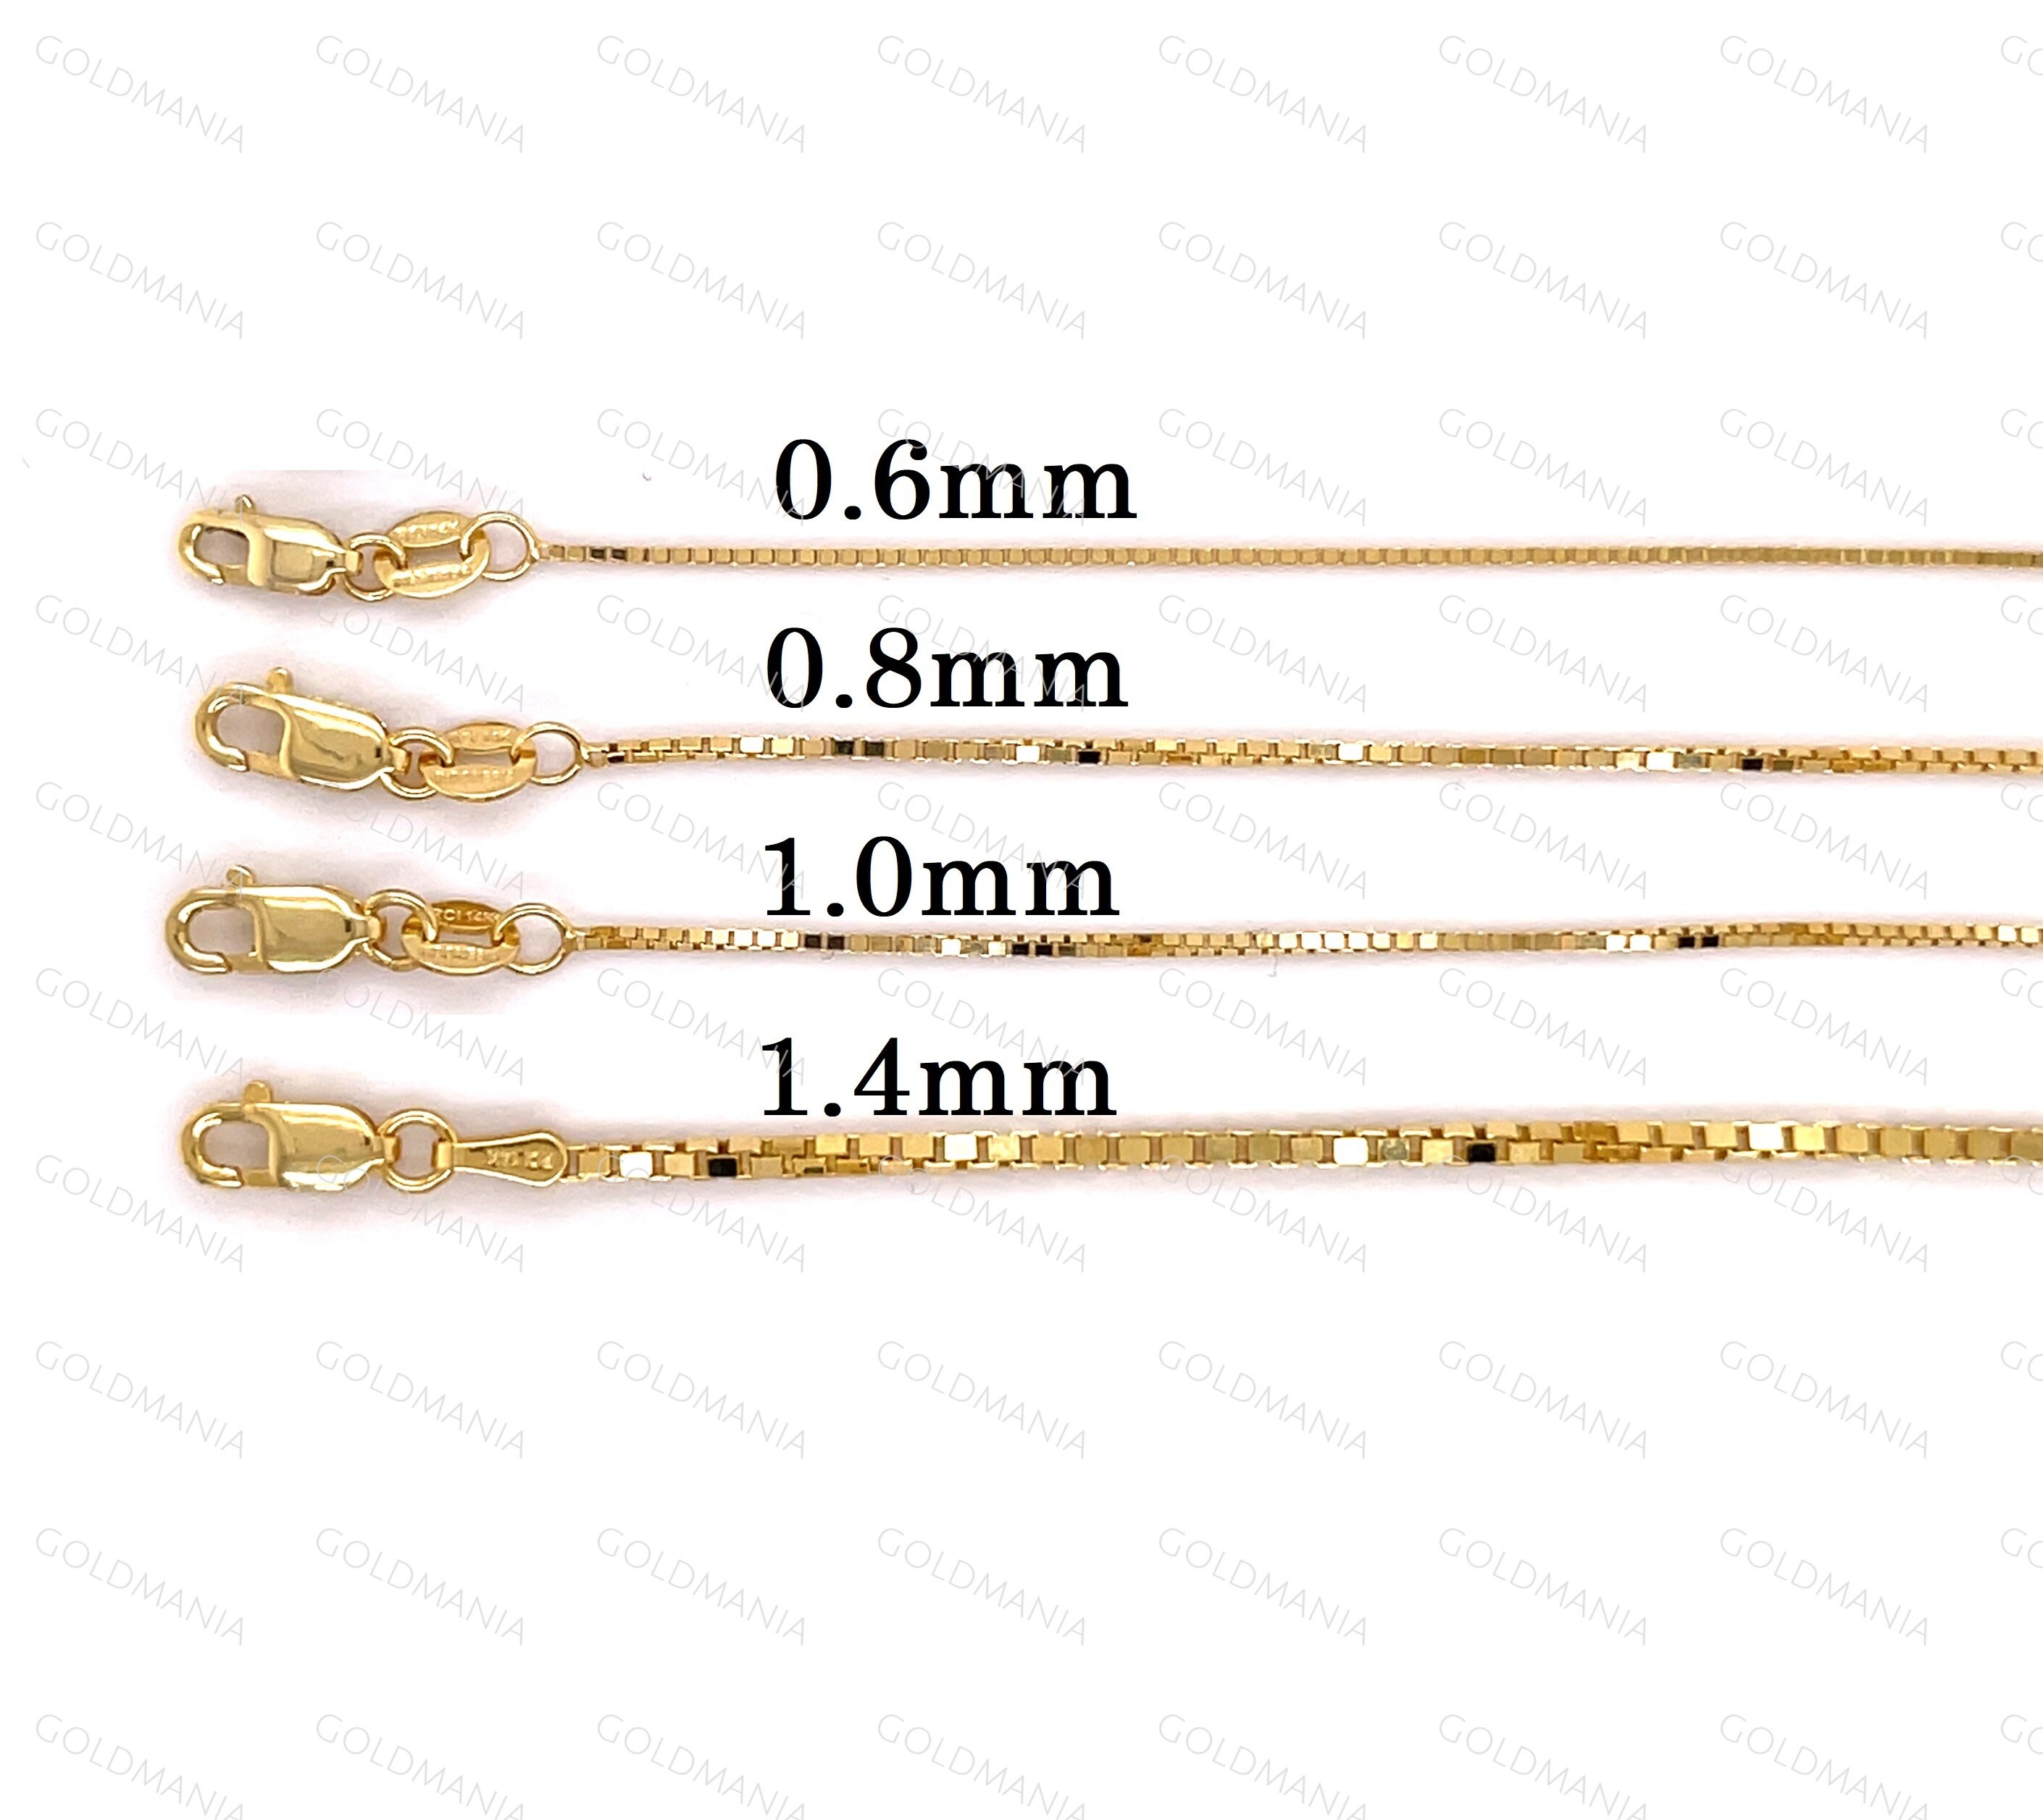 Buy 14k Yellow Gold Skinny Diamond Cut Rope Chain 16-24 Inch 1.30